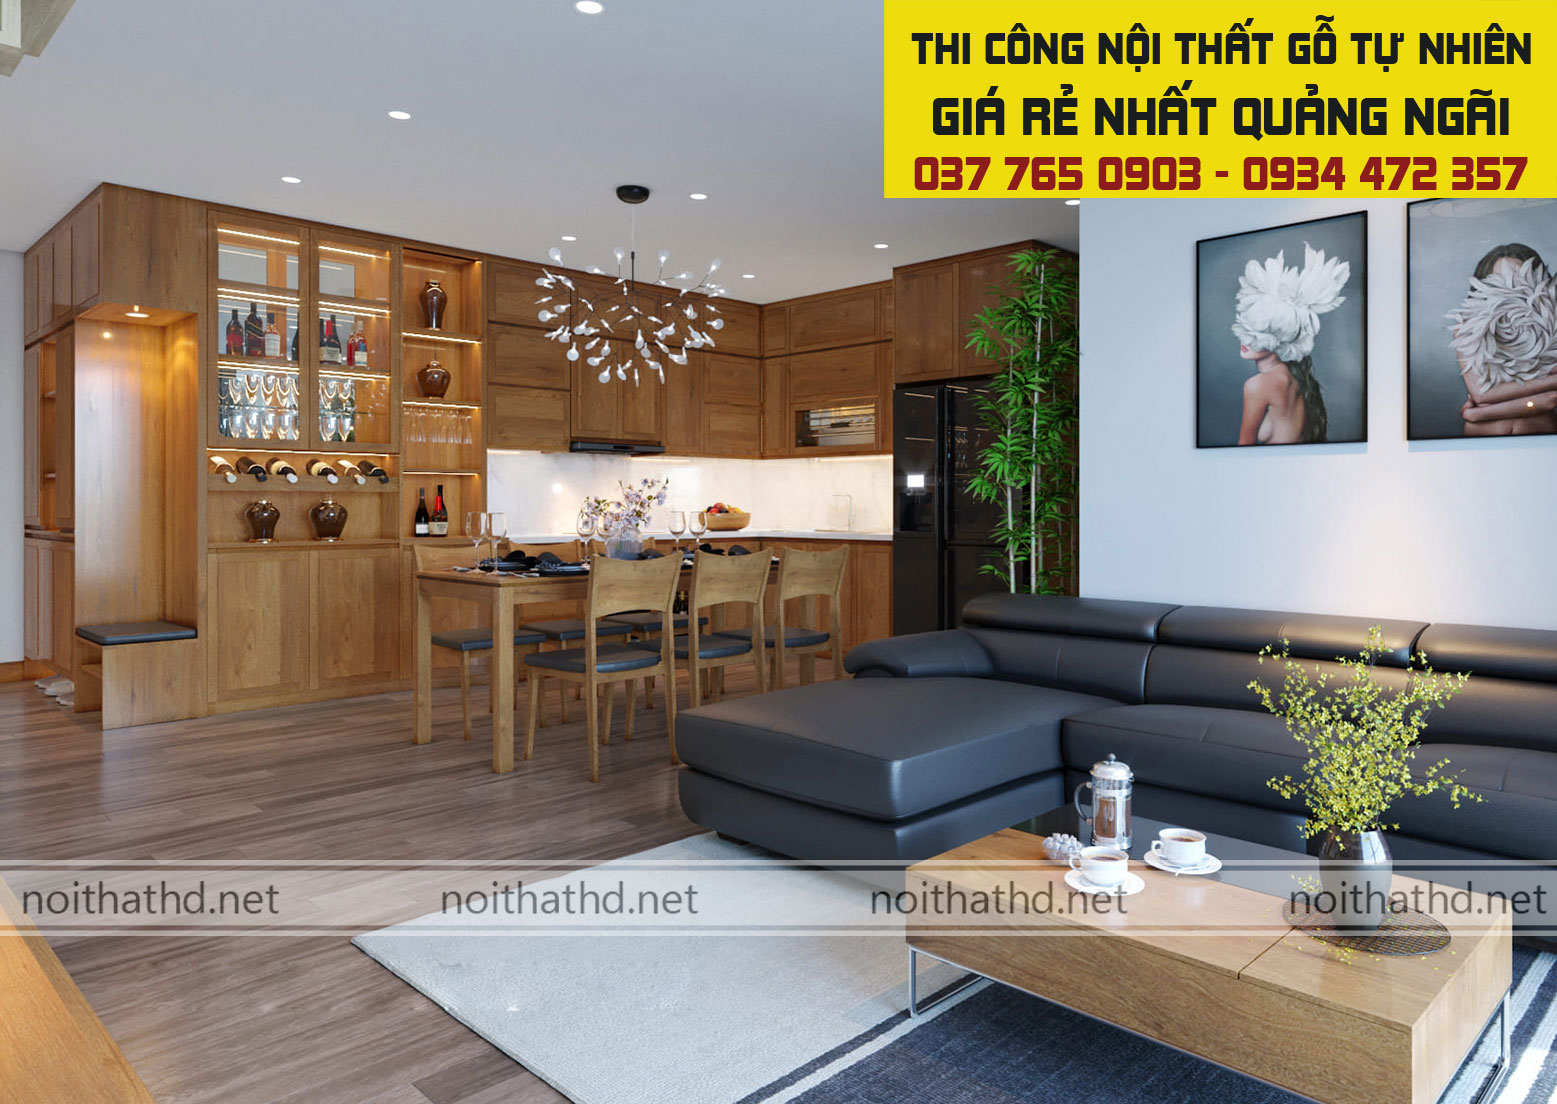 Thiết kế thi công nội thất gỗ tự nhiên giá rẻ tại Quảng Ngãi